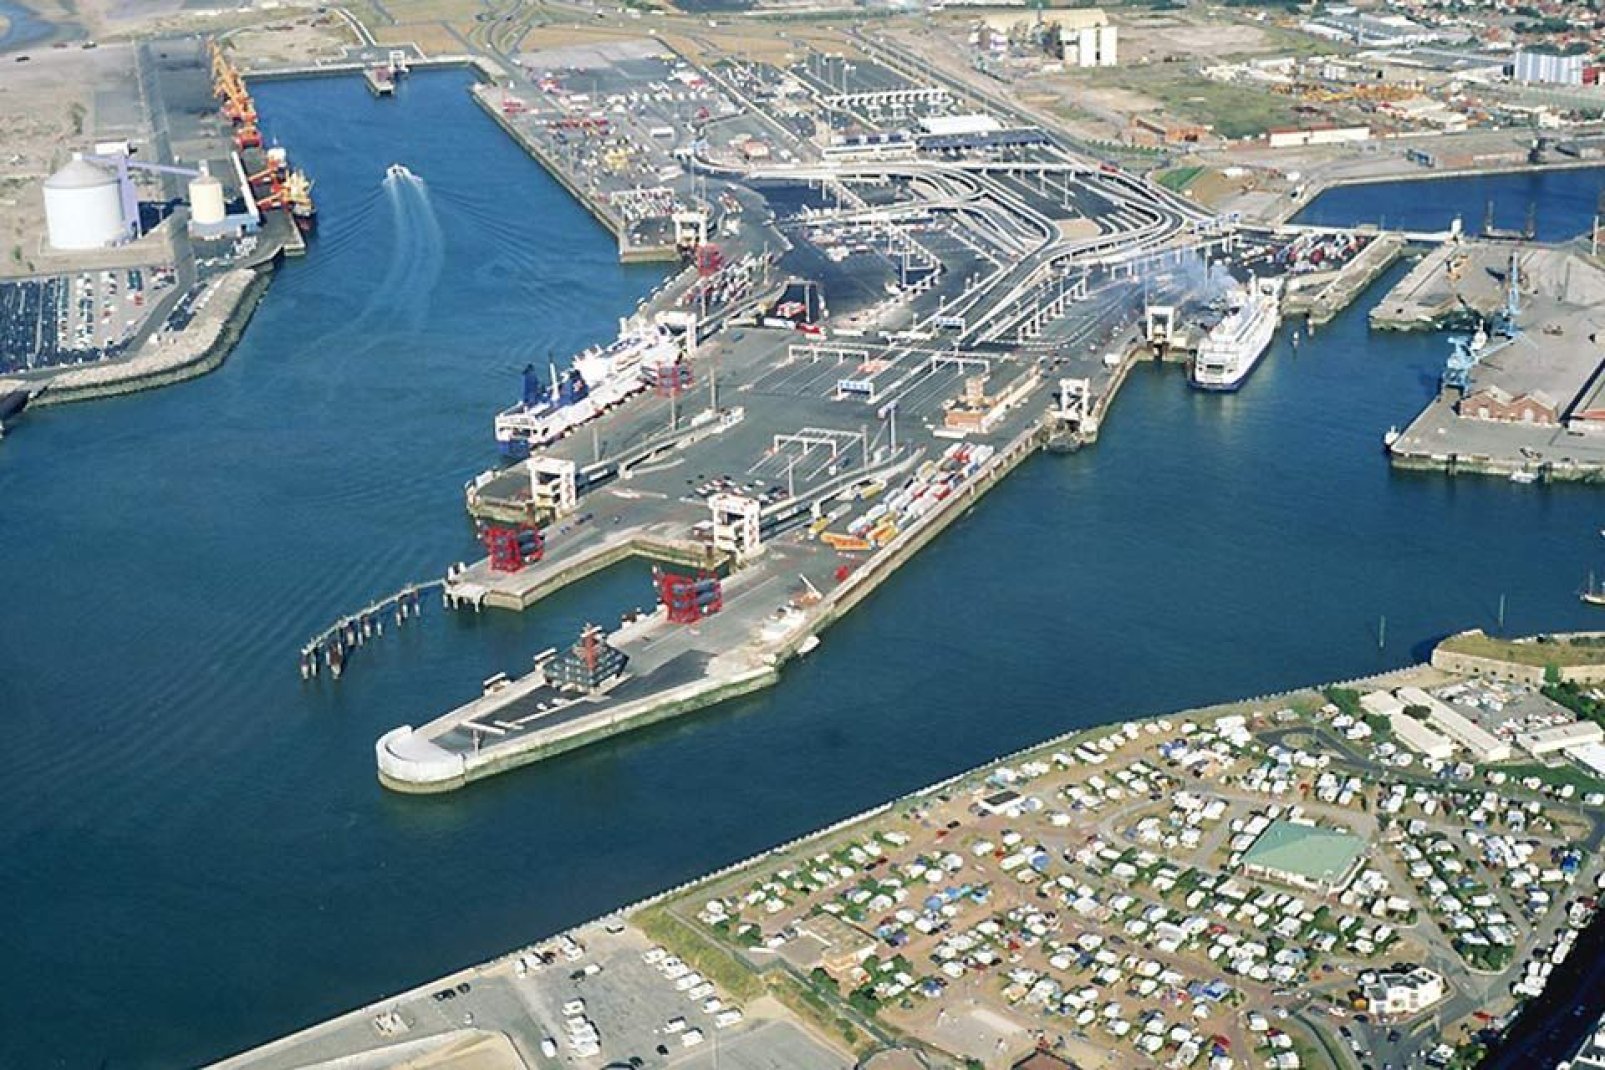 Il porto di Calais imbarca numerosi passeggeri e merci verso l'Inghilterra, del resto rappresenta il principale porto turistico della Francia